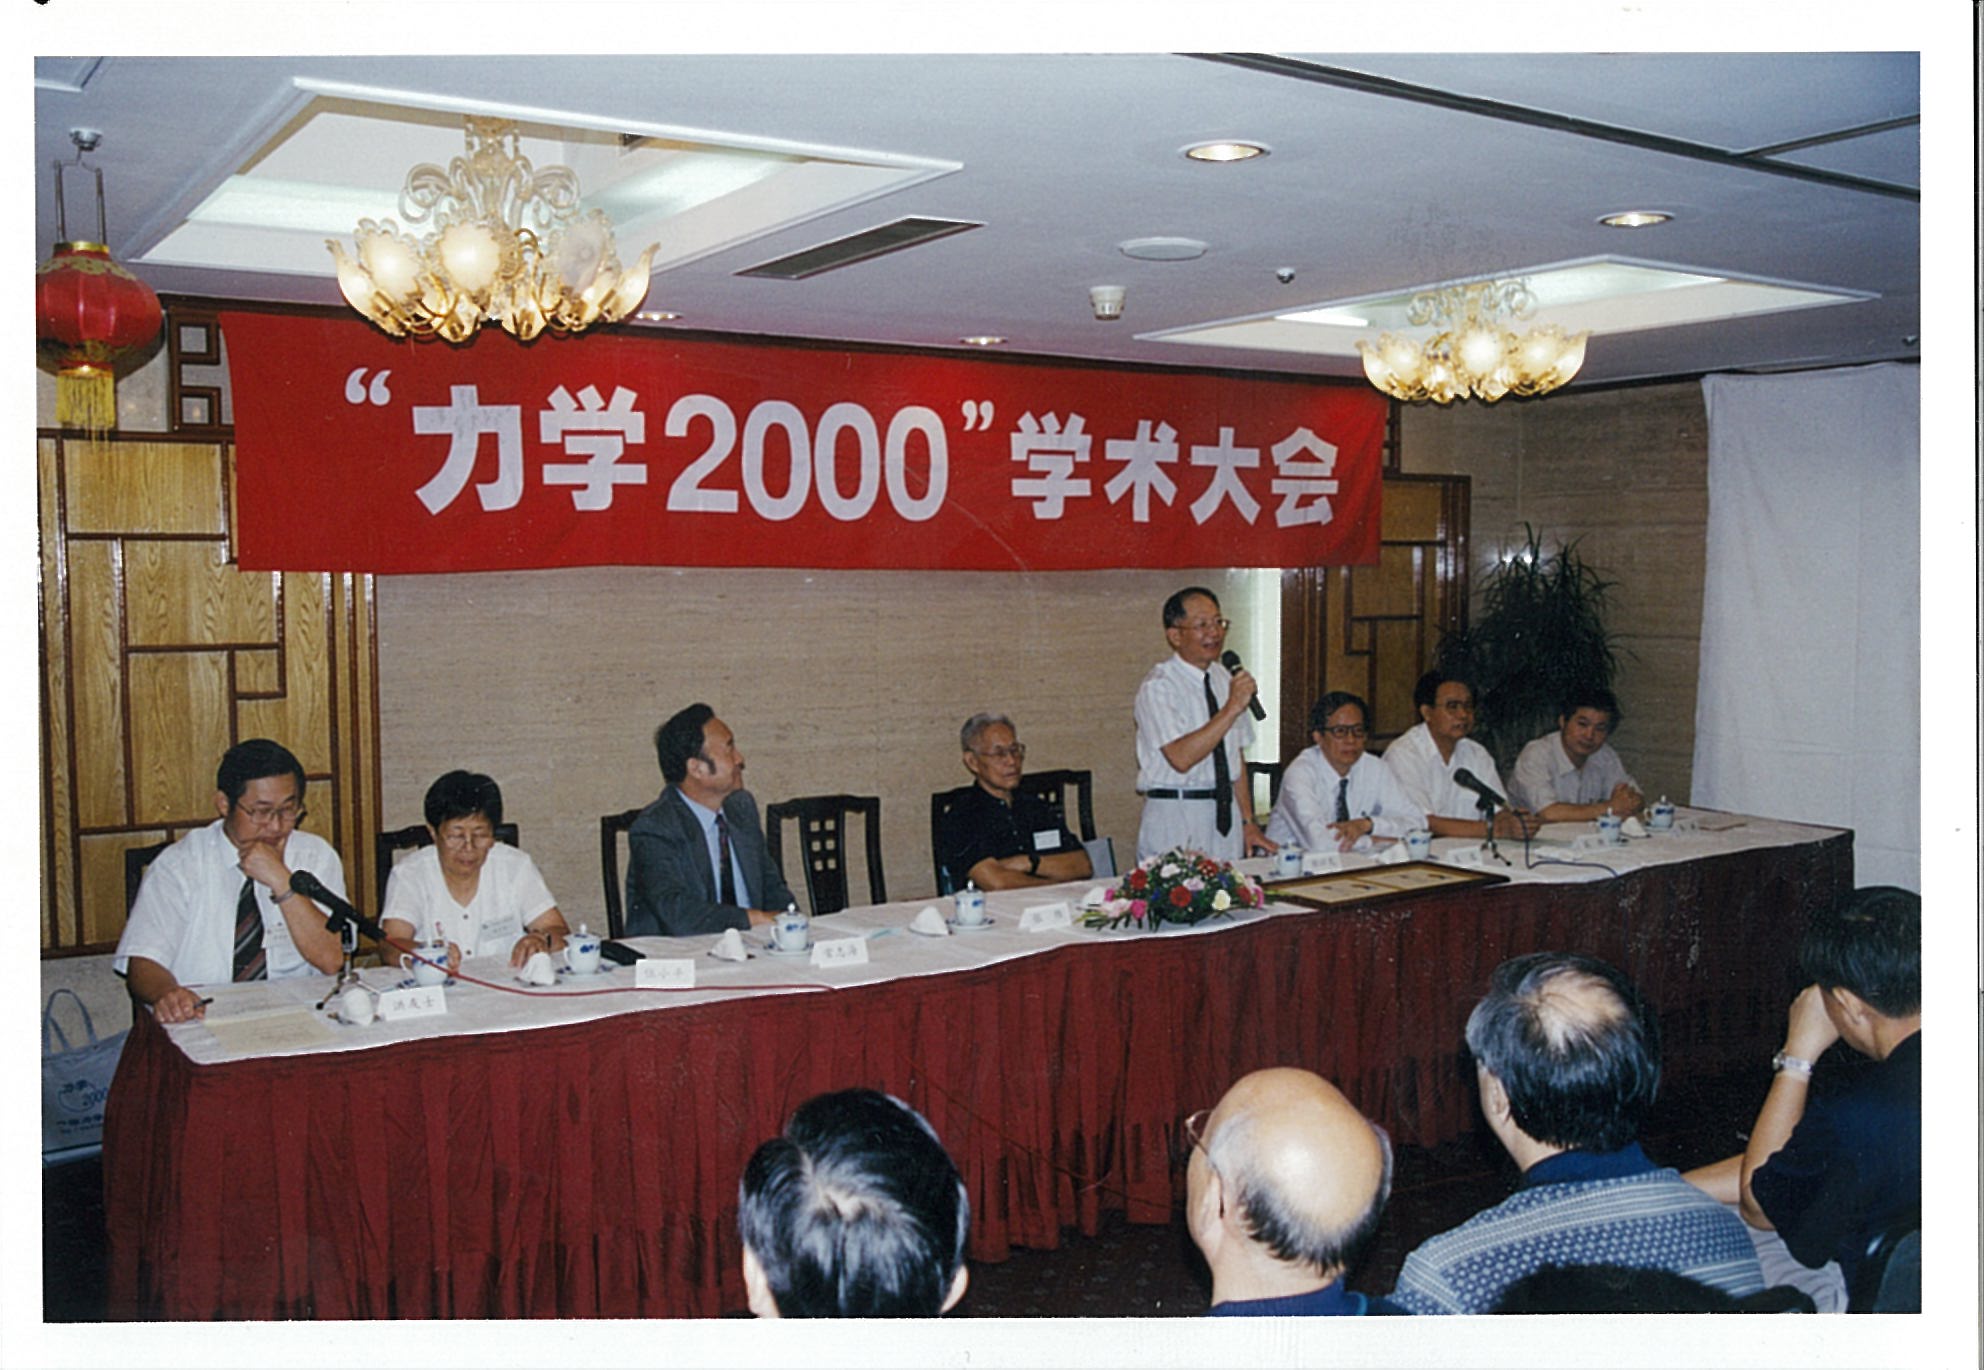 “力学2000学术大会”在北京奥林匹克饭店召开（2000年8月22日~24日），白以龙参加会议。